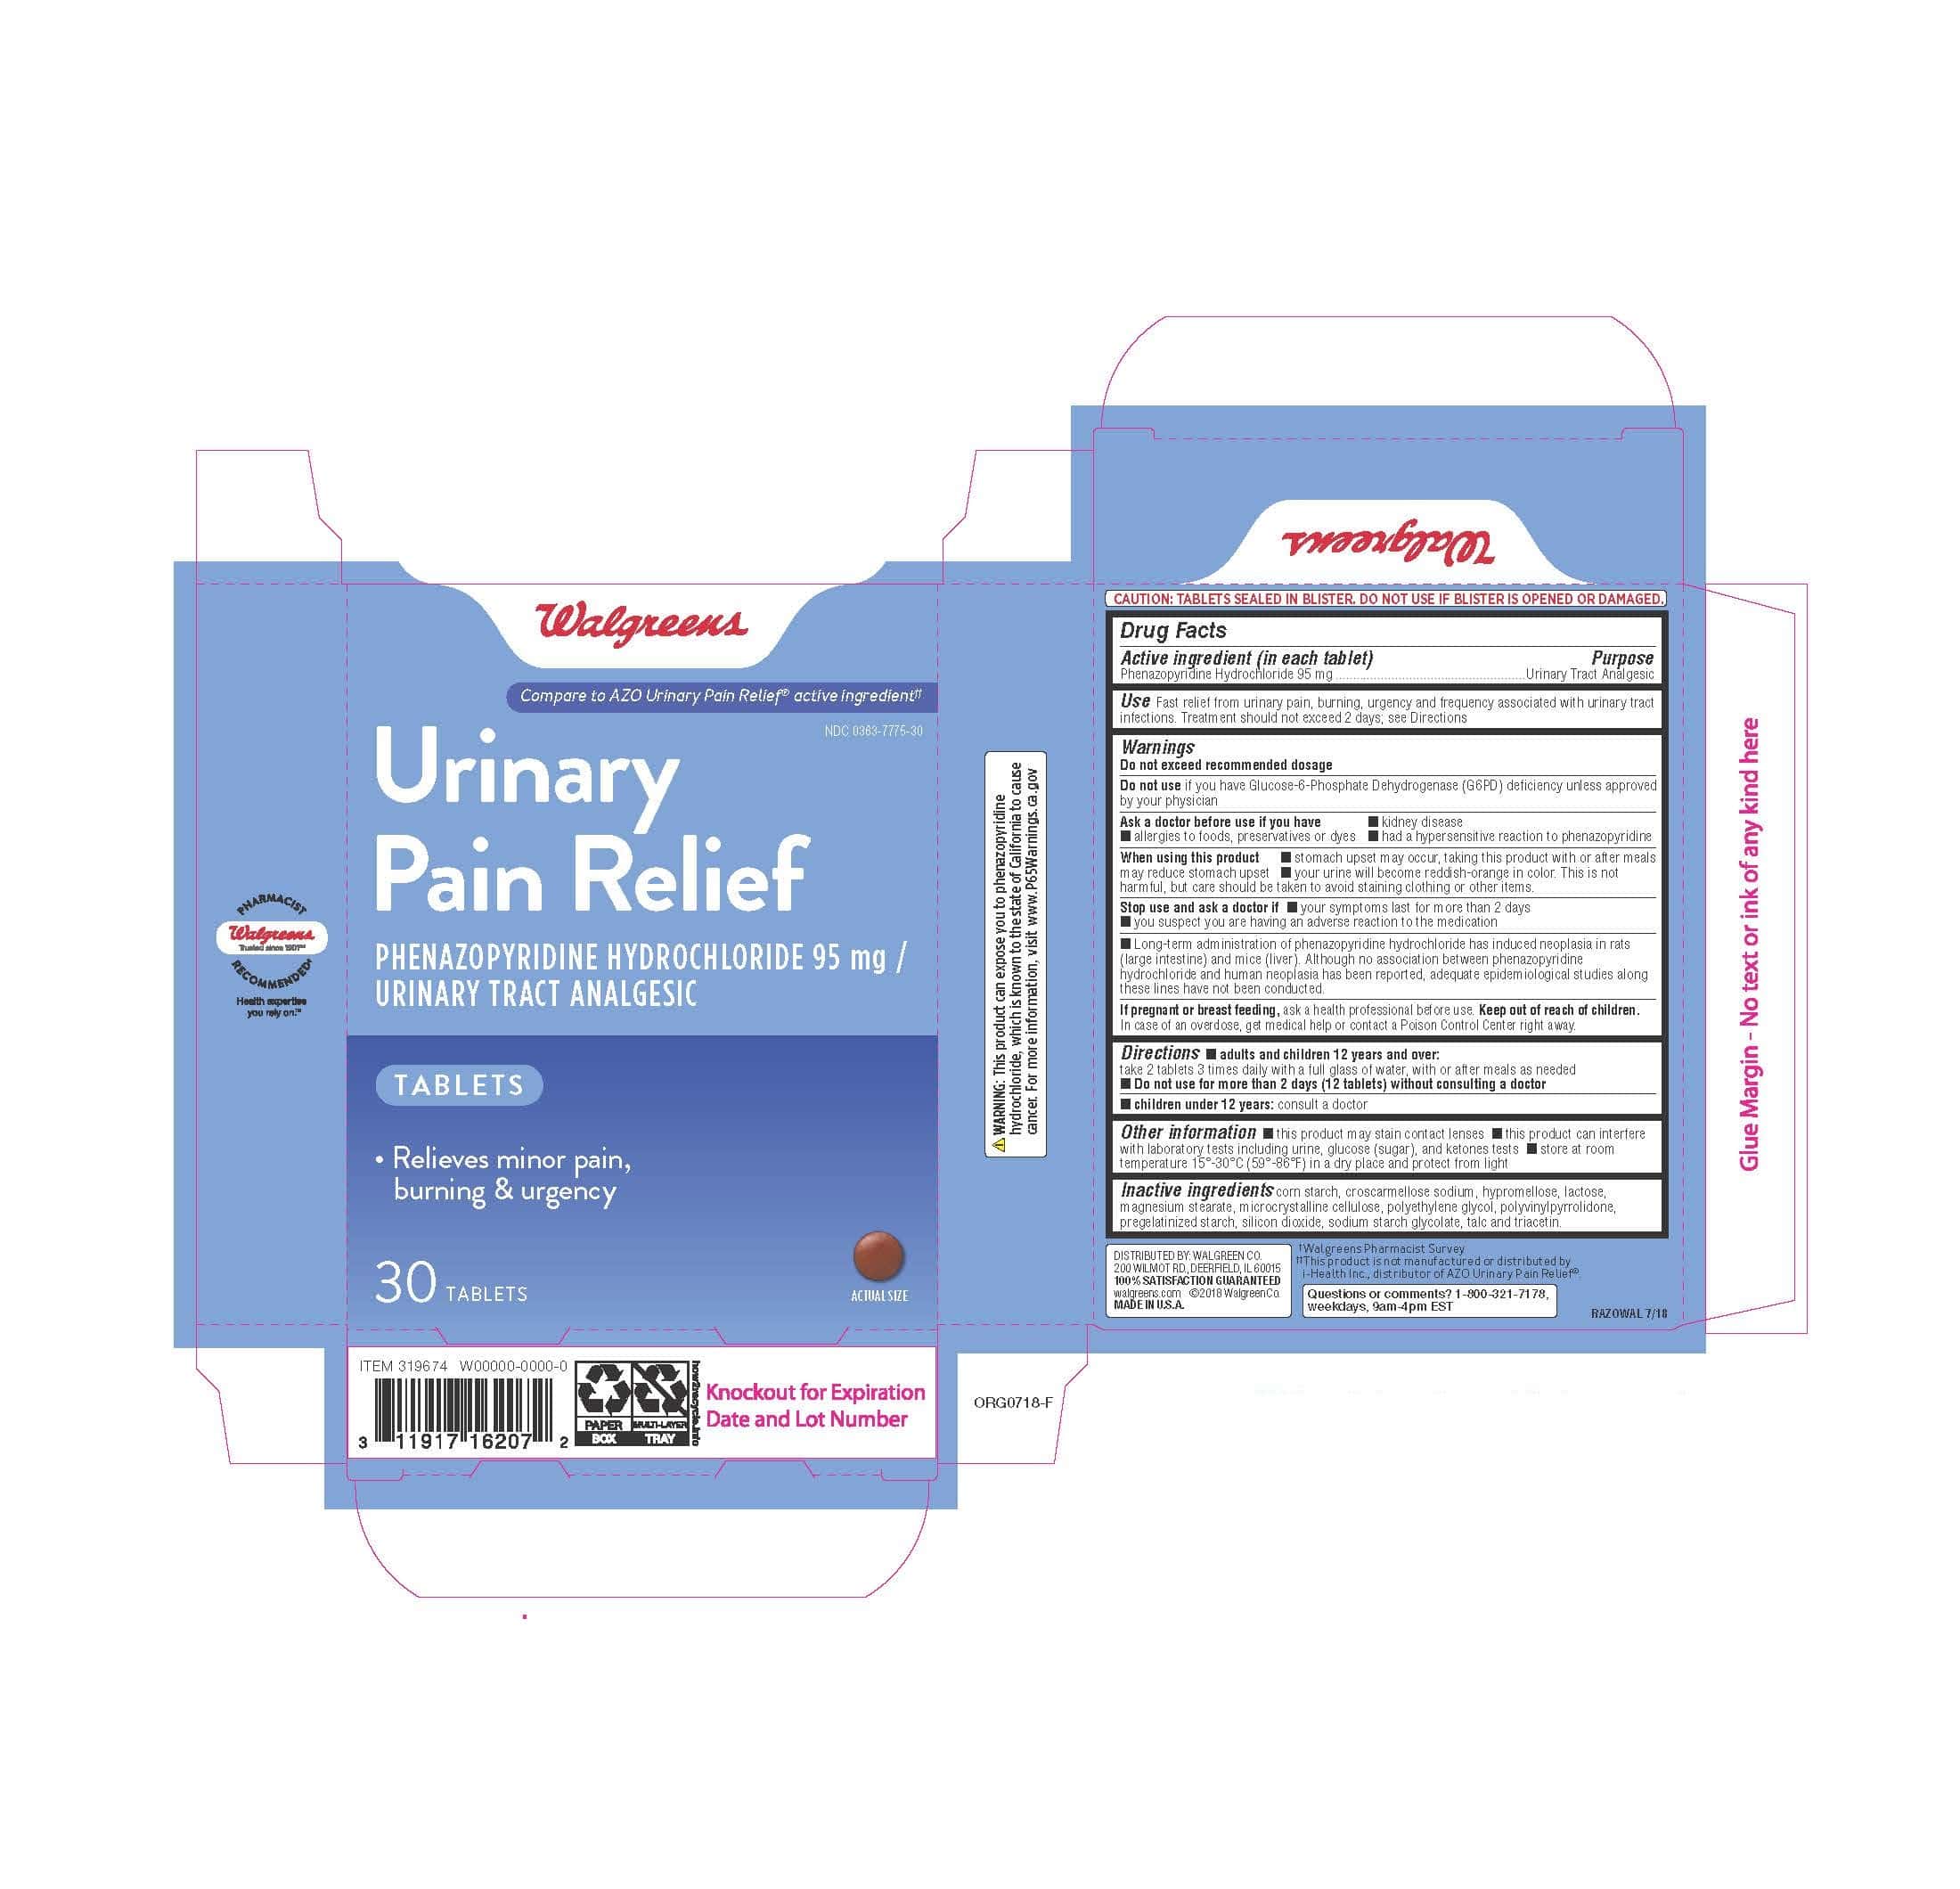 Walgreens Urinary Pain Relief: Details from the FDA, via OTCLabels.com